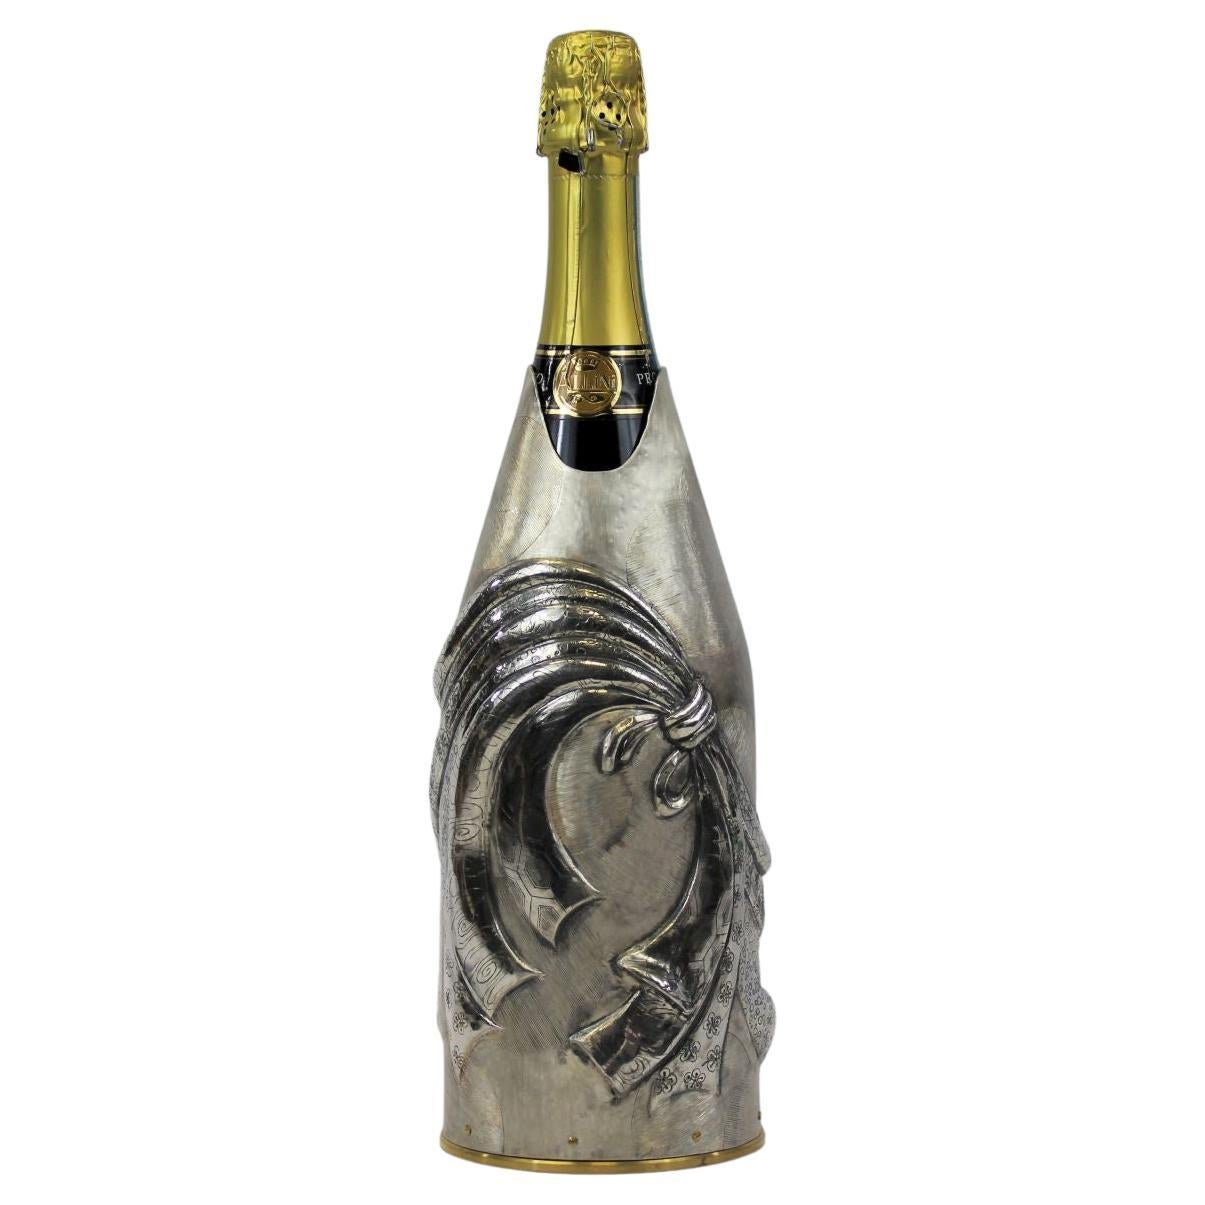 Dieser vollständig aus reinem Silber 999/°° gefertigte Champagne K-OVER ist Teil unserer Collection'S Work of Art.
Die Künstlerin Mary Yoshida ließ sich von der Tradition der Omamori inspirieren, die in der japanischen Kultur als
Gegenstände oder